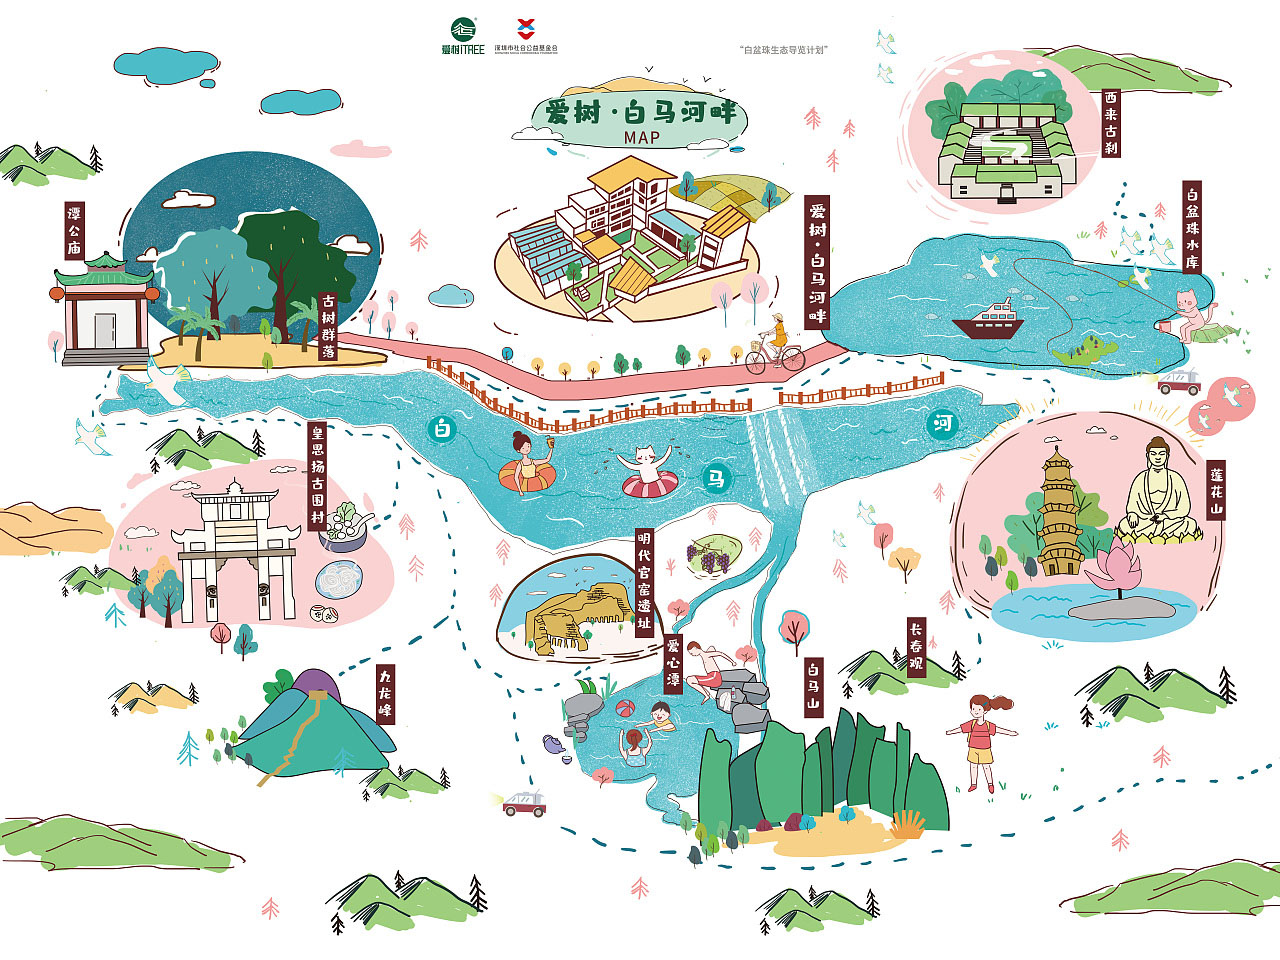 桂林语音导览让景区游览更加智能